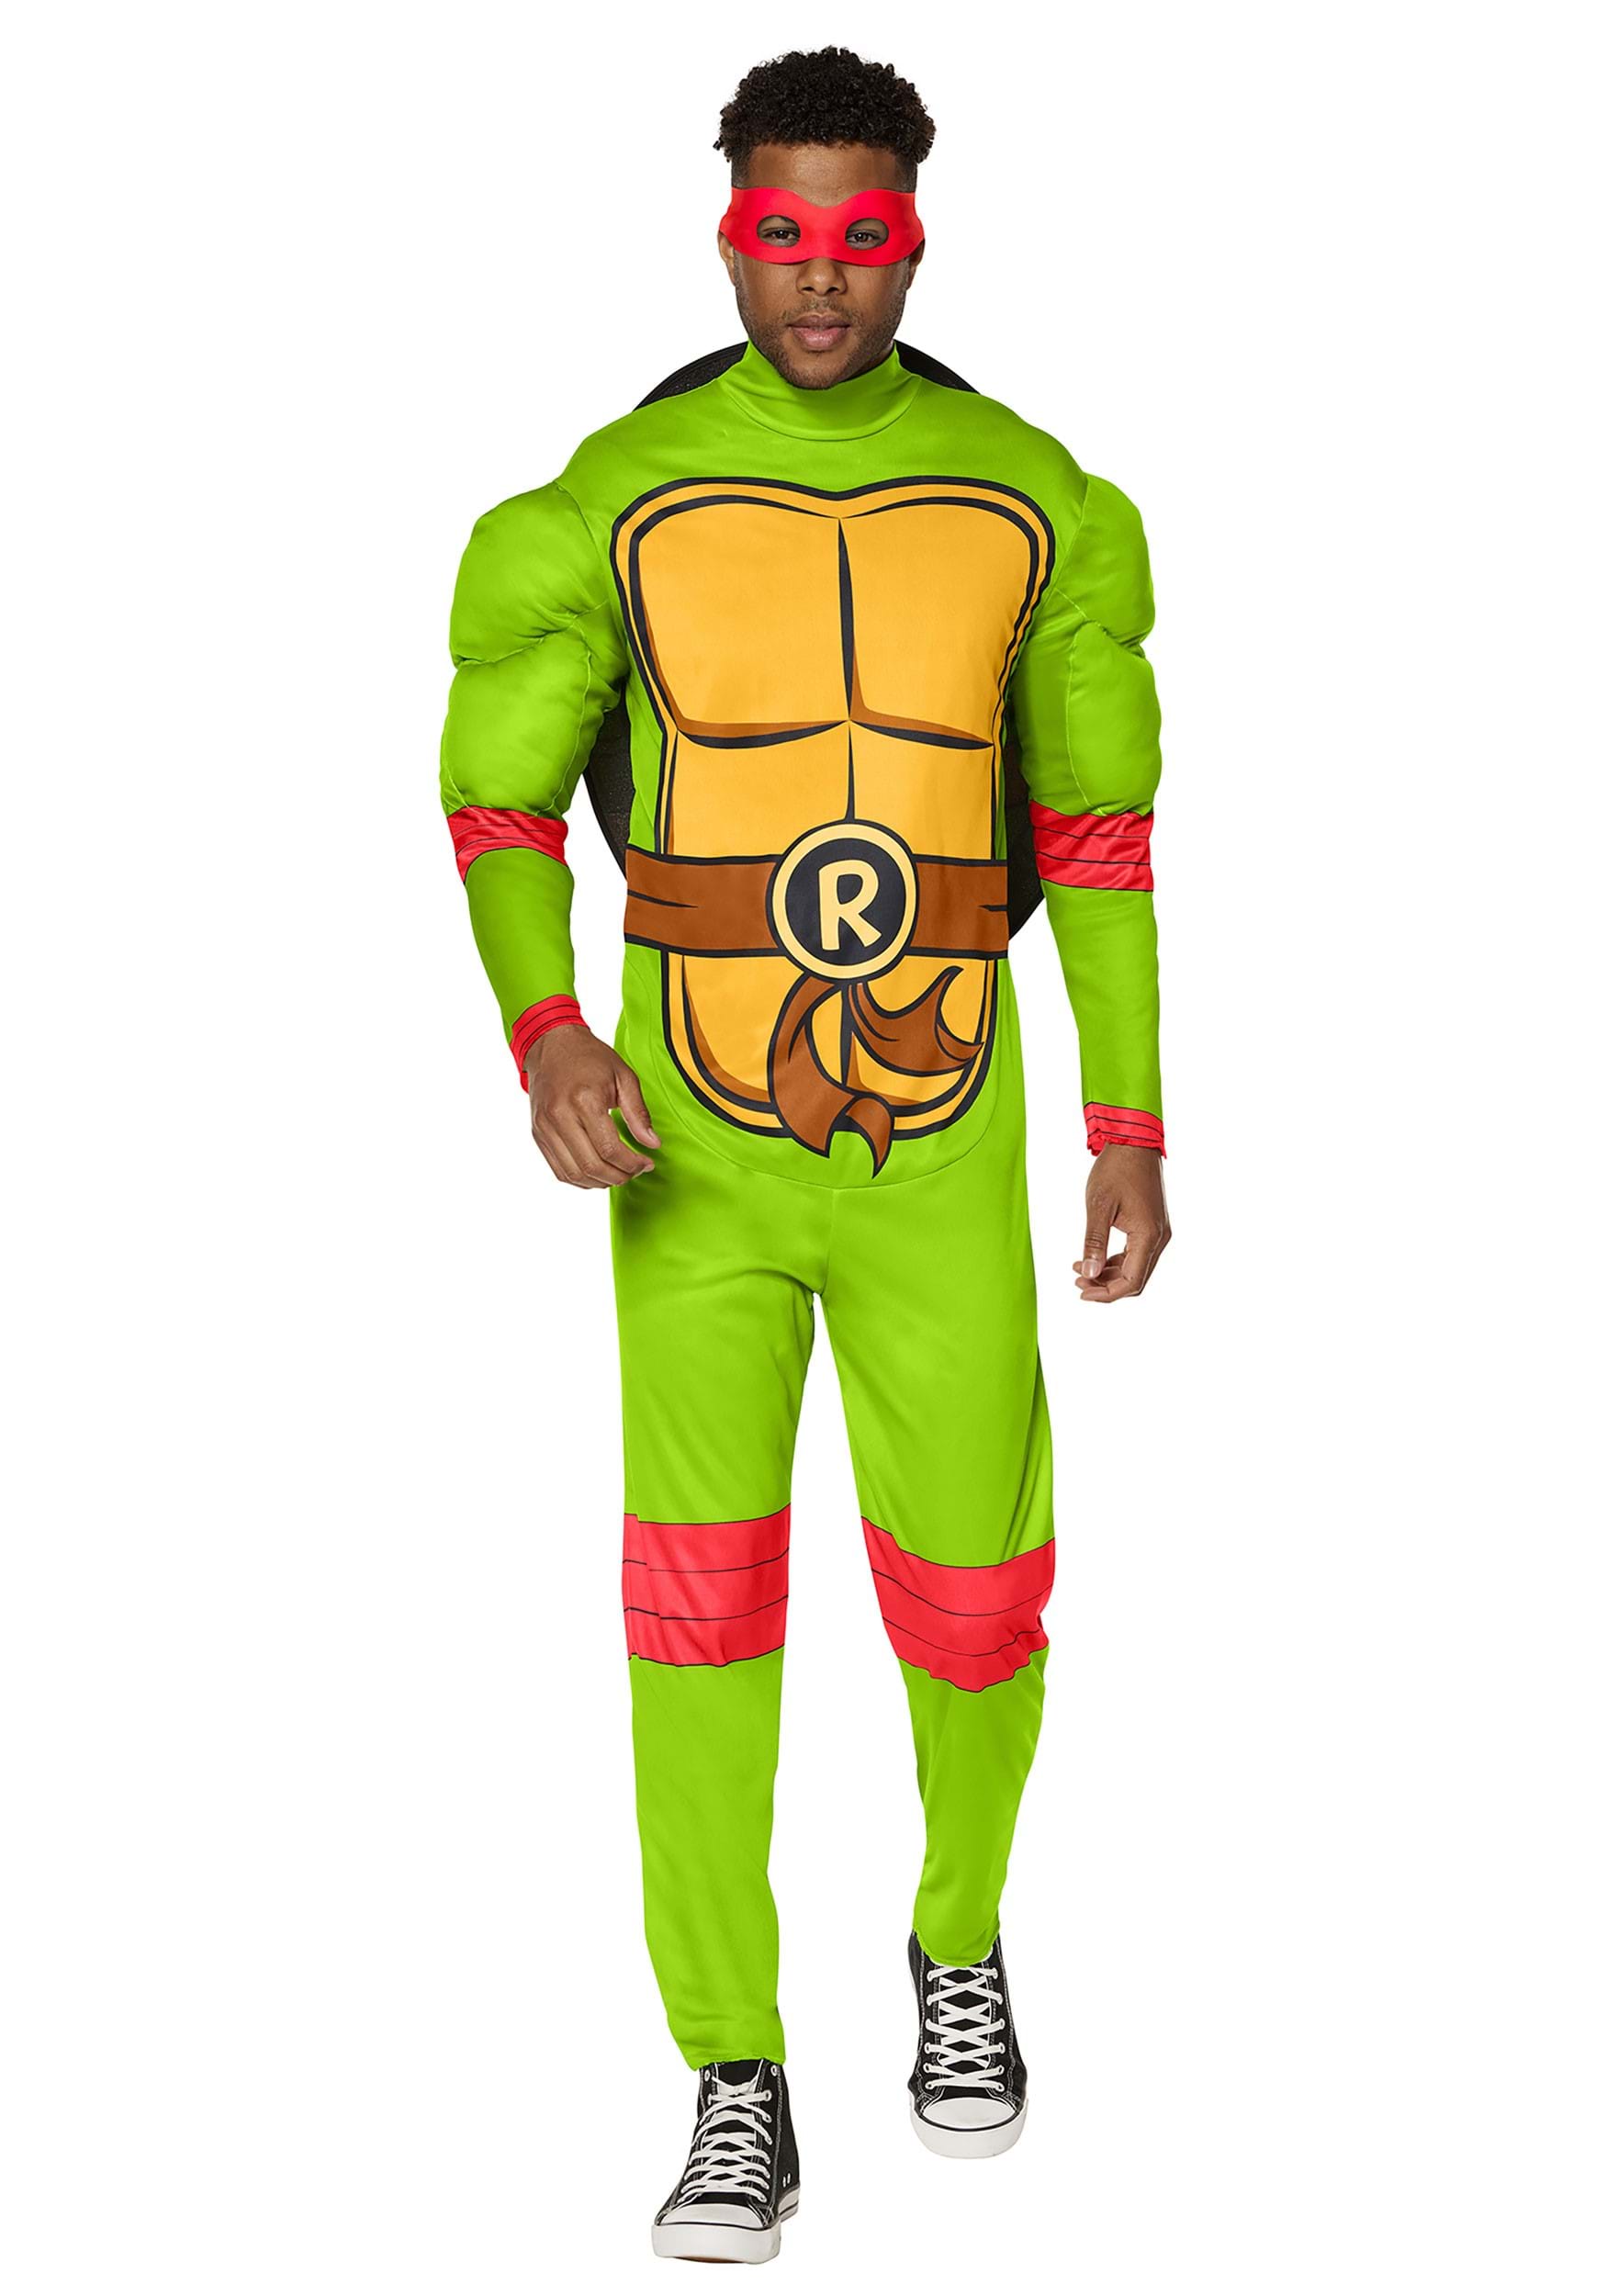 https://images.halloween.com/products/91817/1-1/teenage-mutant-ninja-turtles-adult-raphael-costume.jpg